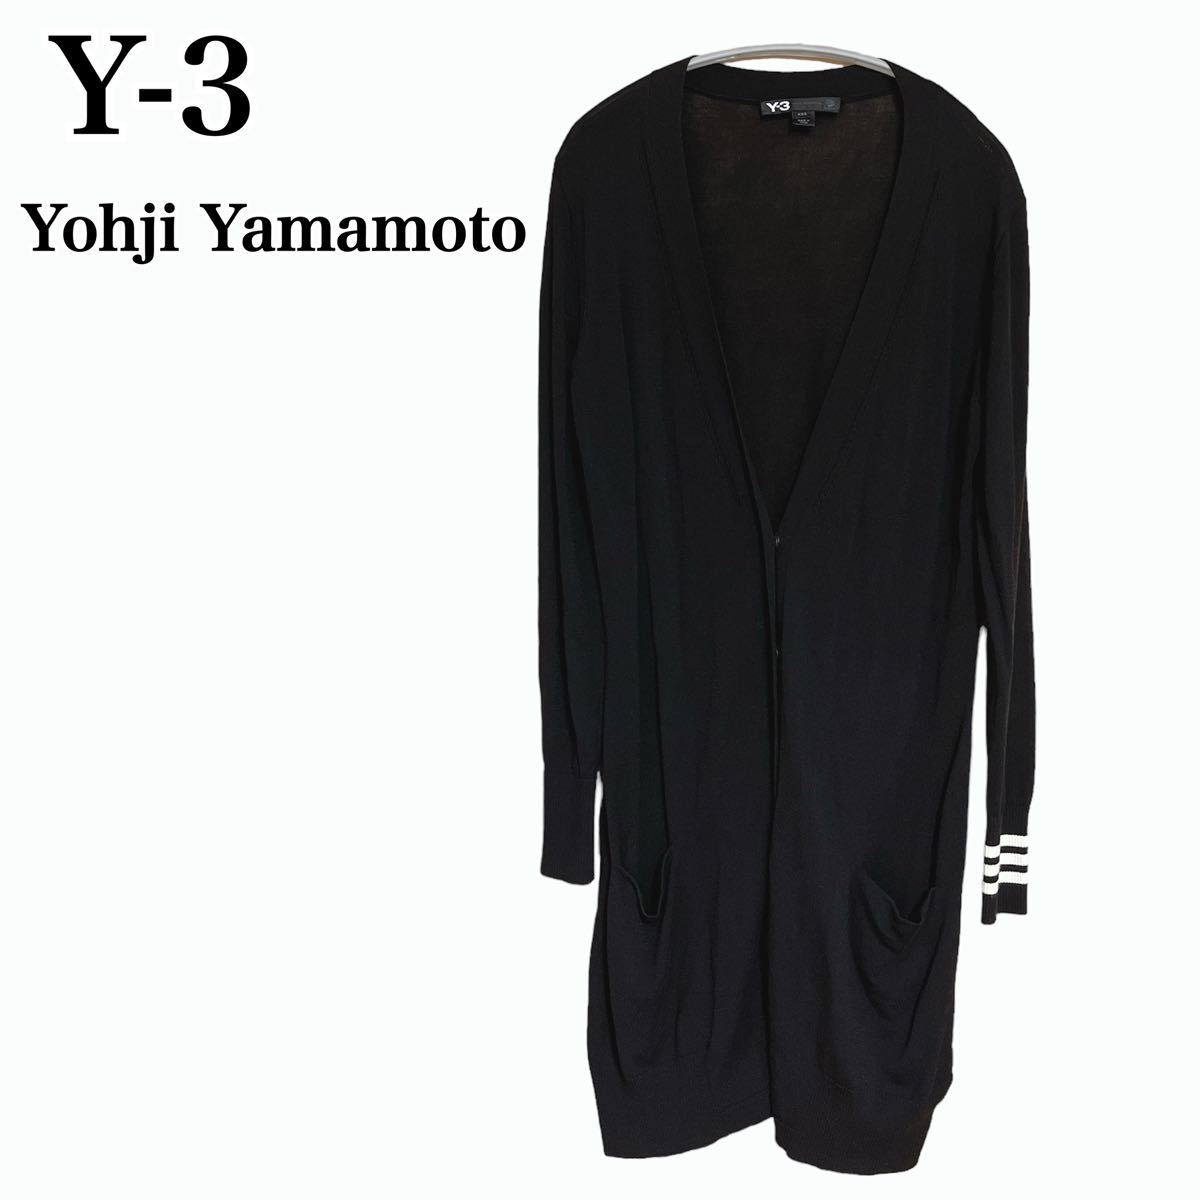 状態良 Y-3 Yohji Yamamoto ニット ロングカーディガン 長袖 ヨウジヤマモト adidas アディダス メンズ レディース